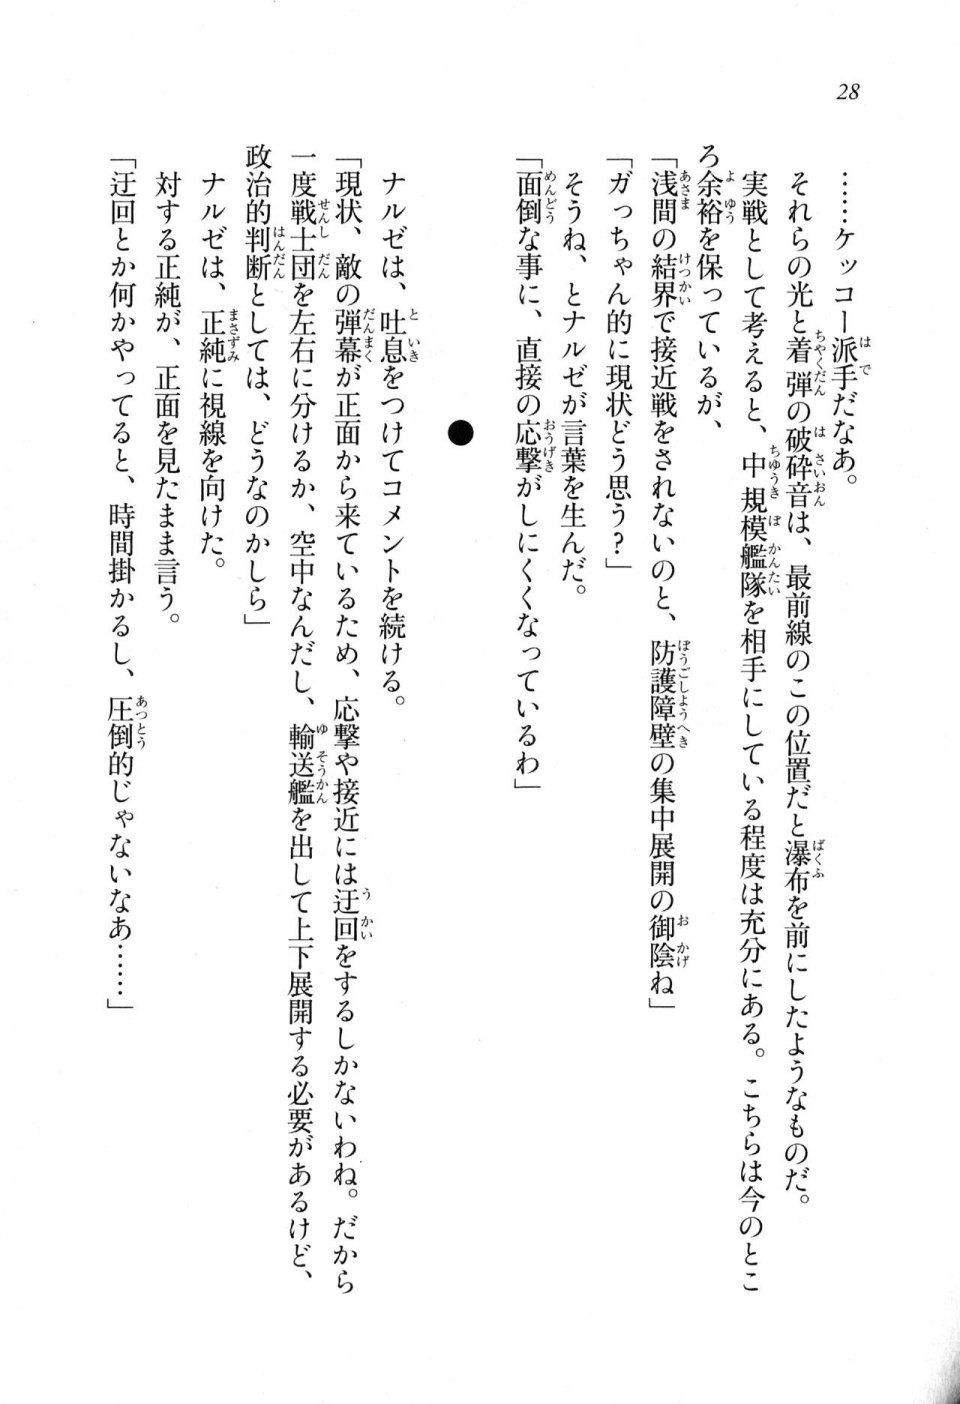 Kyoukai Senjou no Horizon LN Sidestory Vol 1 - Photo #27